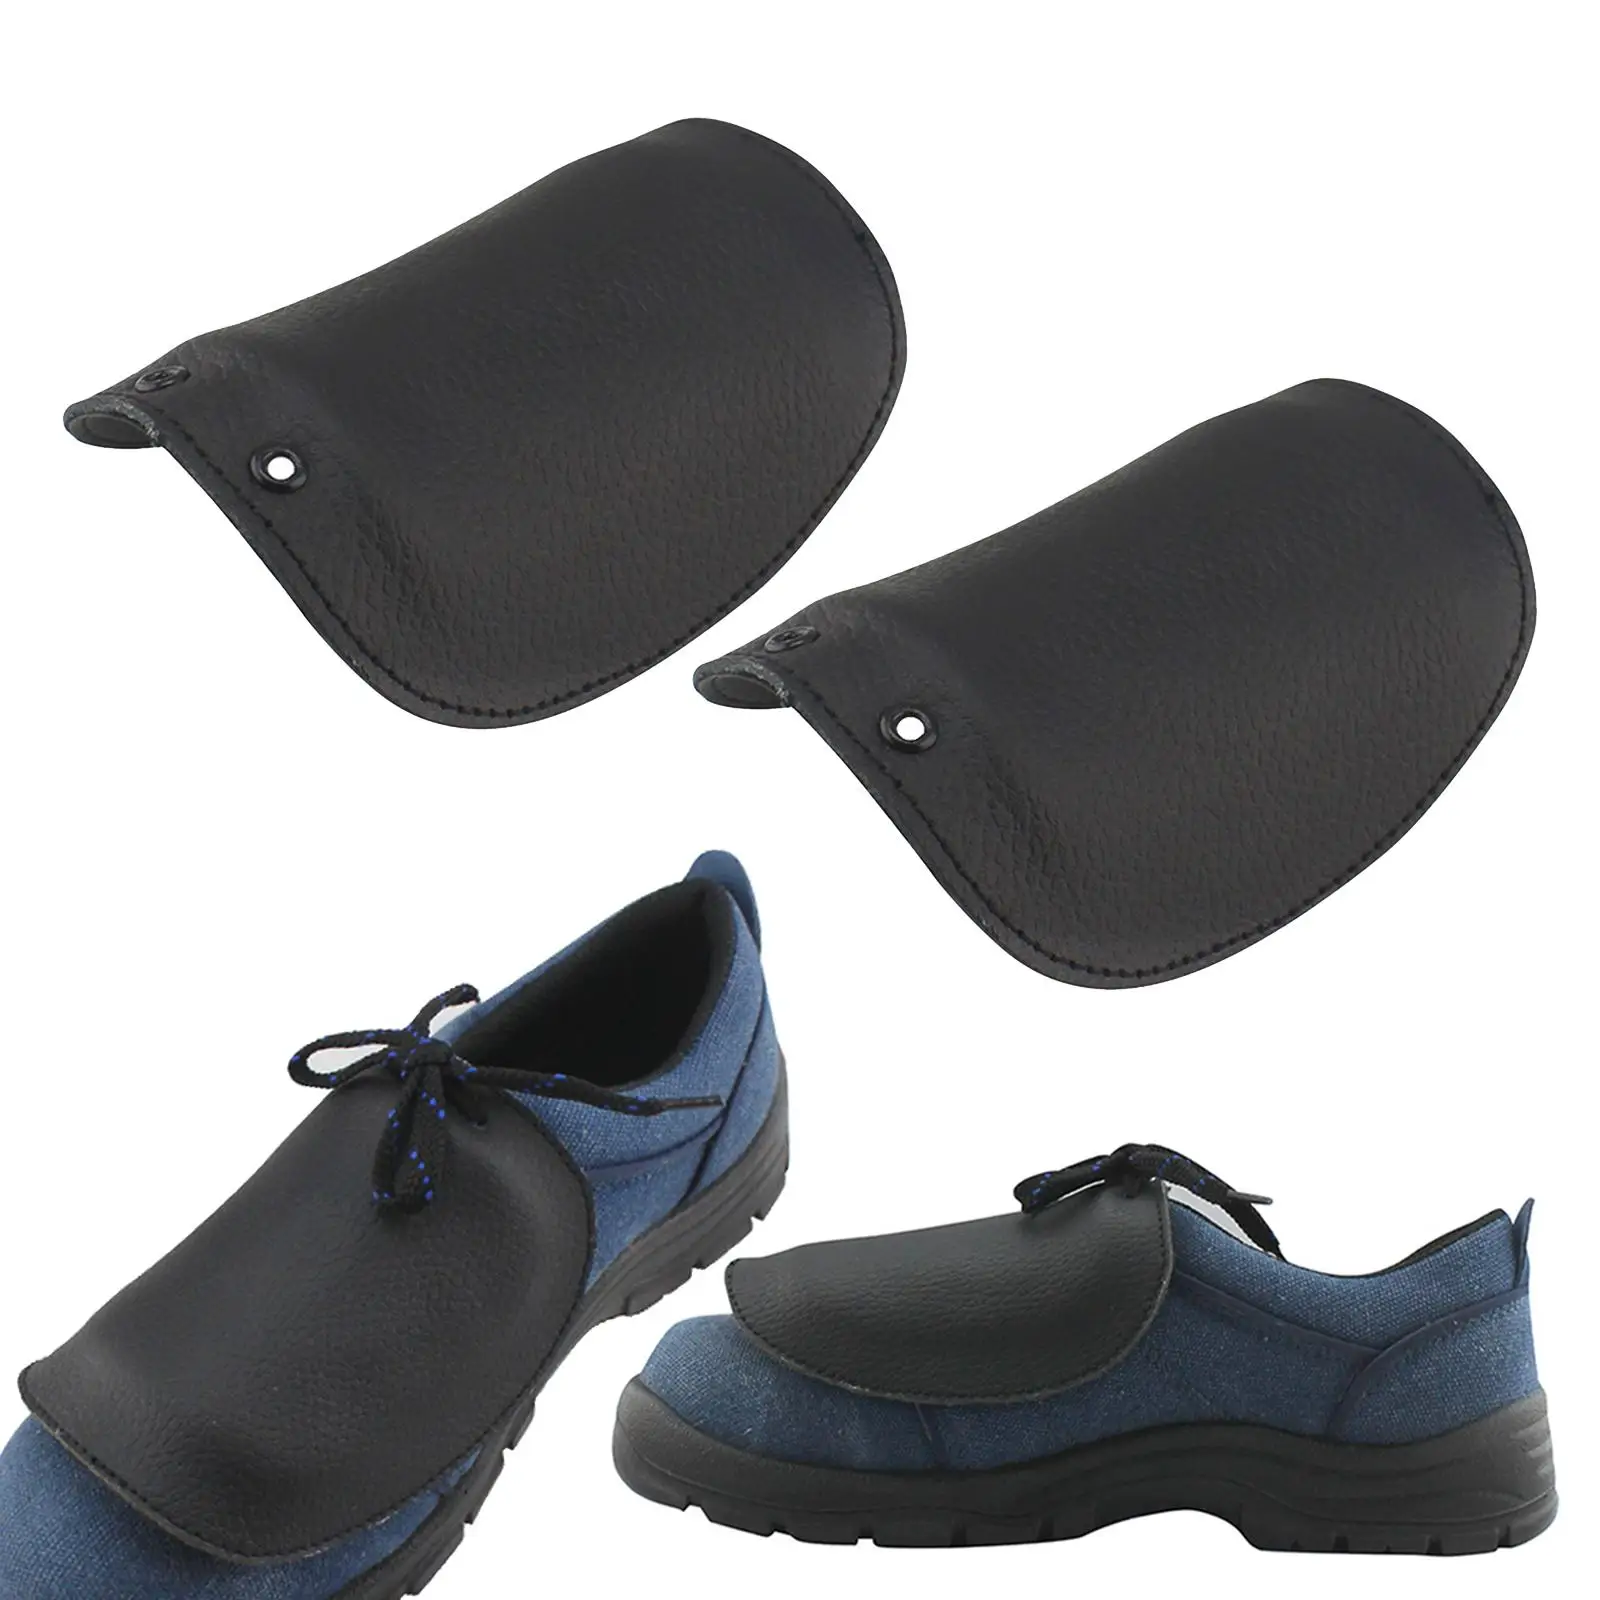 https://ae01.alicdn.com/kf/Sbb2233e8b01a484eb61d76fd571d137ch/Couvre-chaussures-lacets-anti-crasement-anti-br-lure-protecteur-de-chaussures-pour-le-lieu-de-travail.jpg